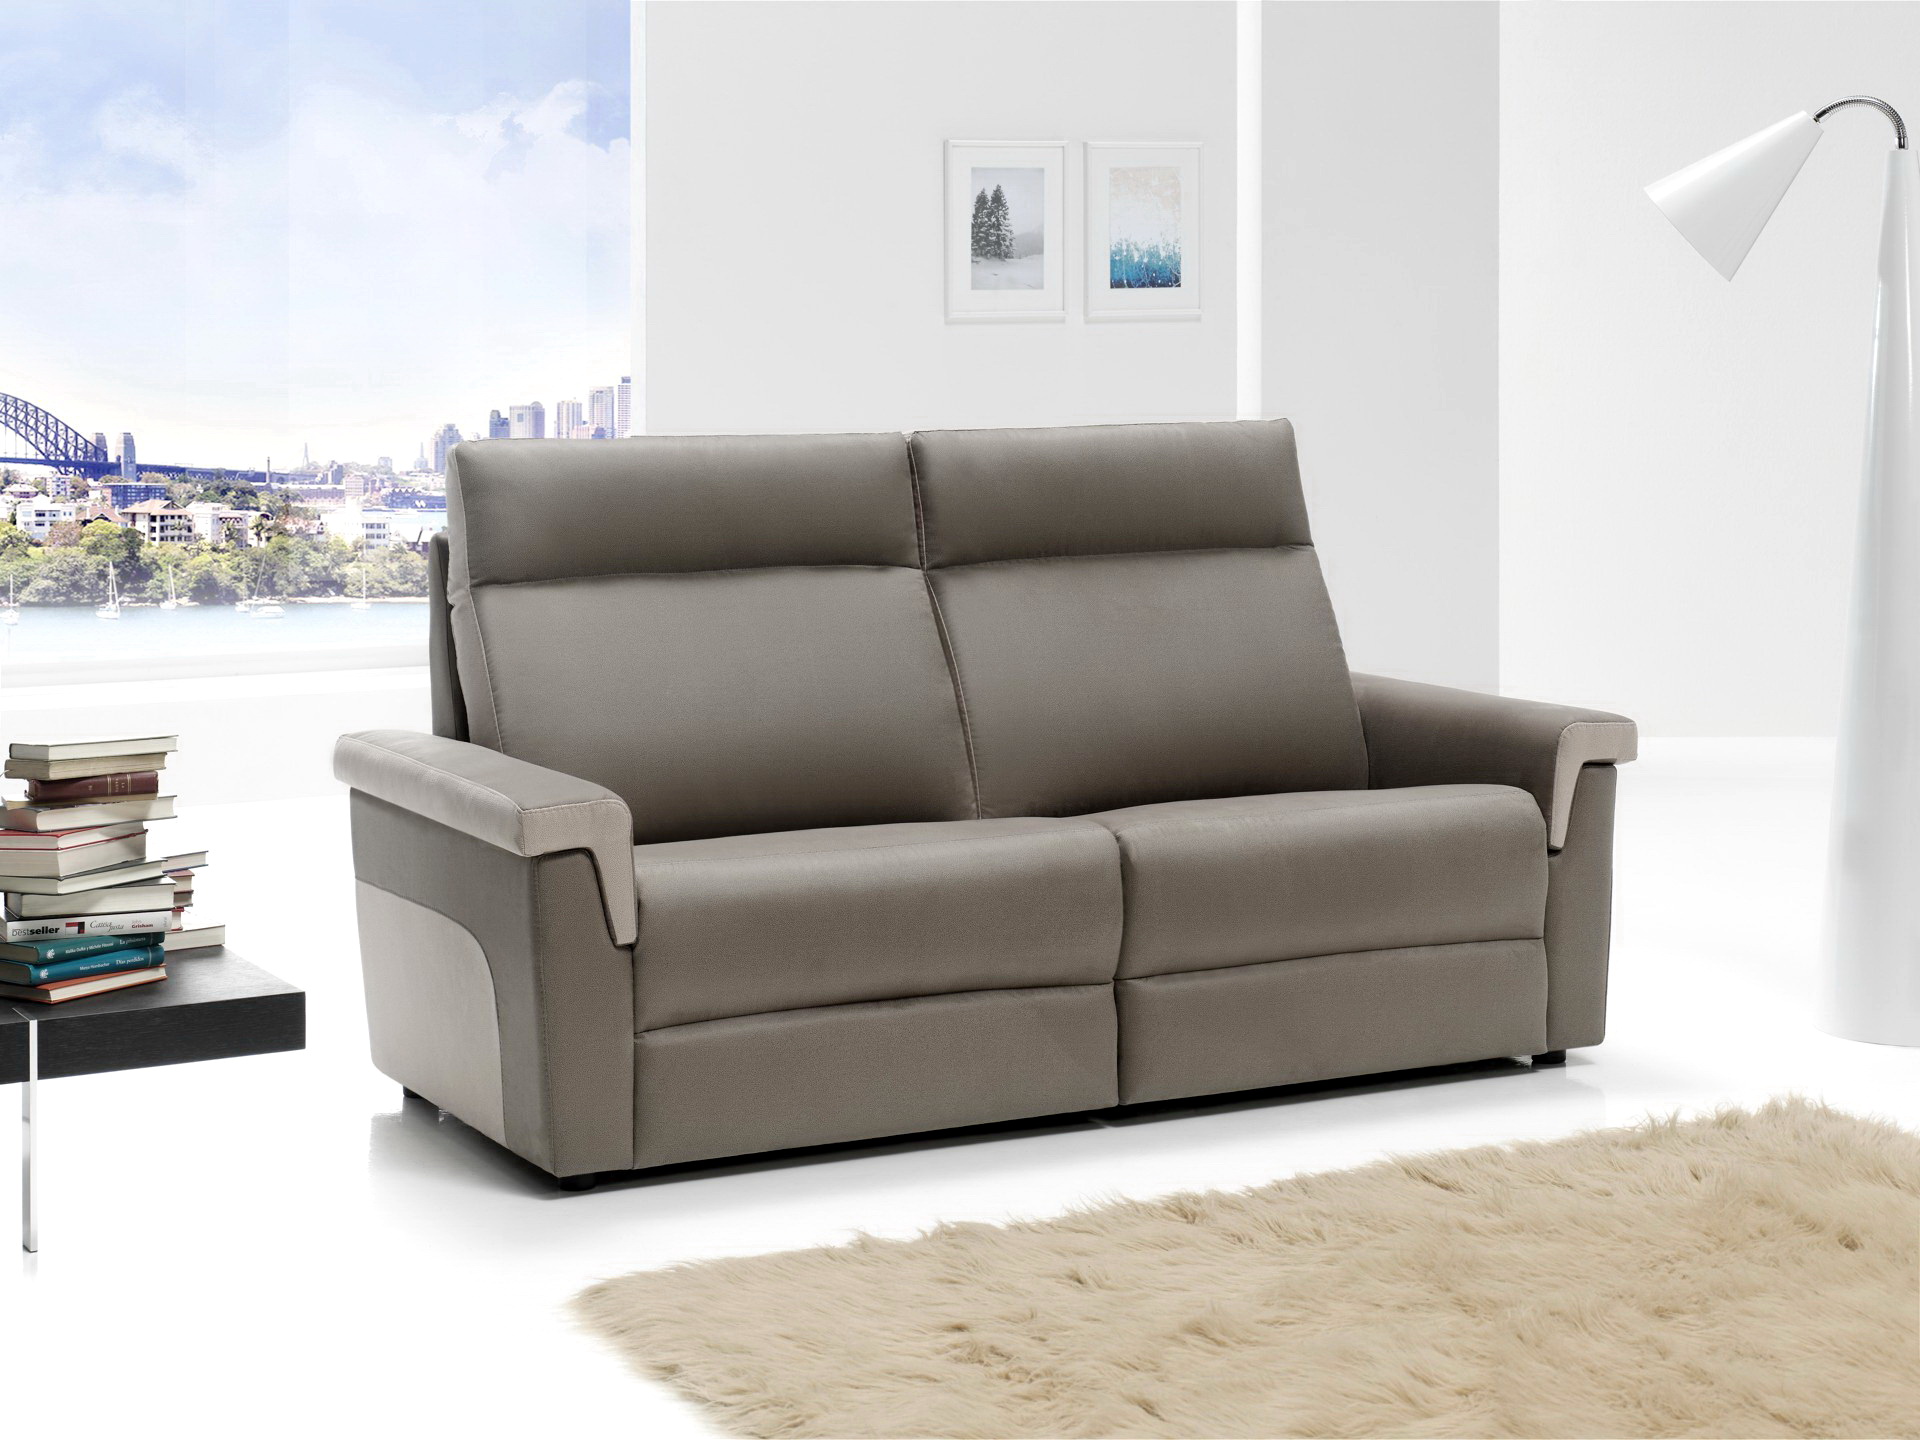 Soriano Martinez Tapizados modelo Lyon confort 0806 3 plazas relax en muebles antoñán® León